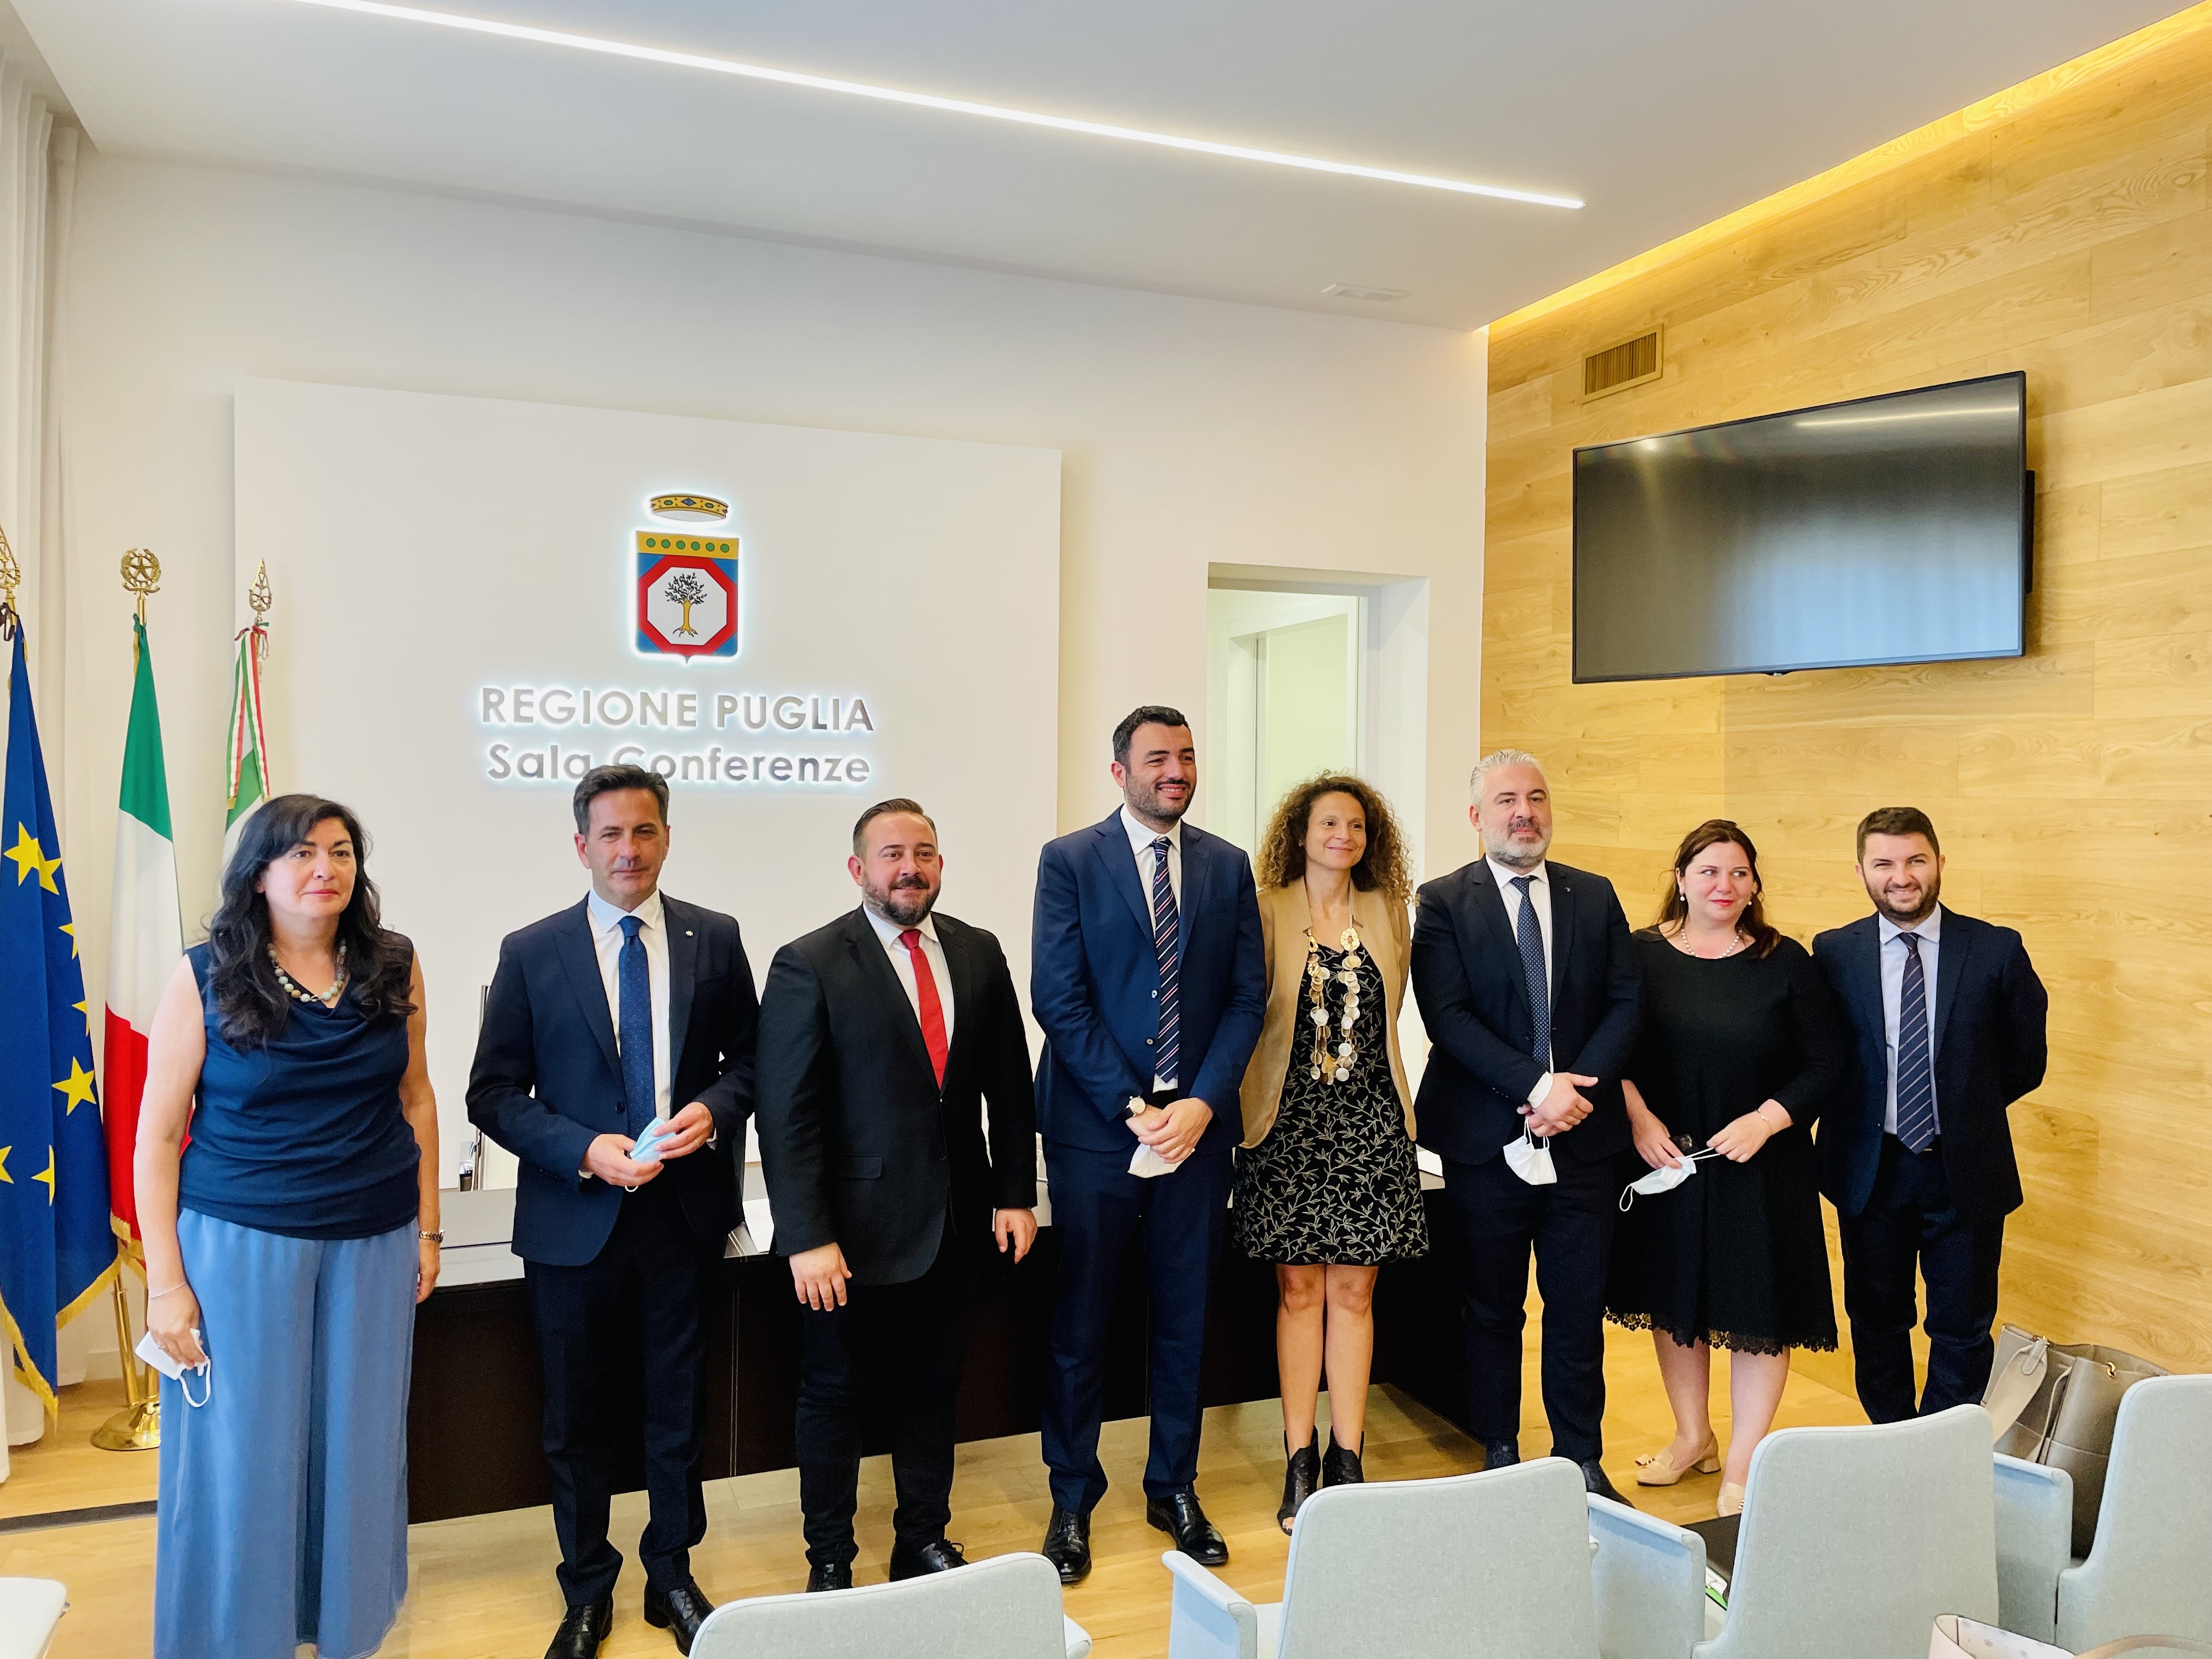 Gallery Incontri bilaterali Puglia - Albania: la cultura dell’innovazione per la crescita dei territori transfrontalieri - Slide 2 of 11